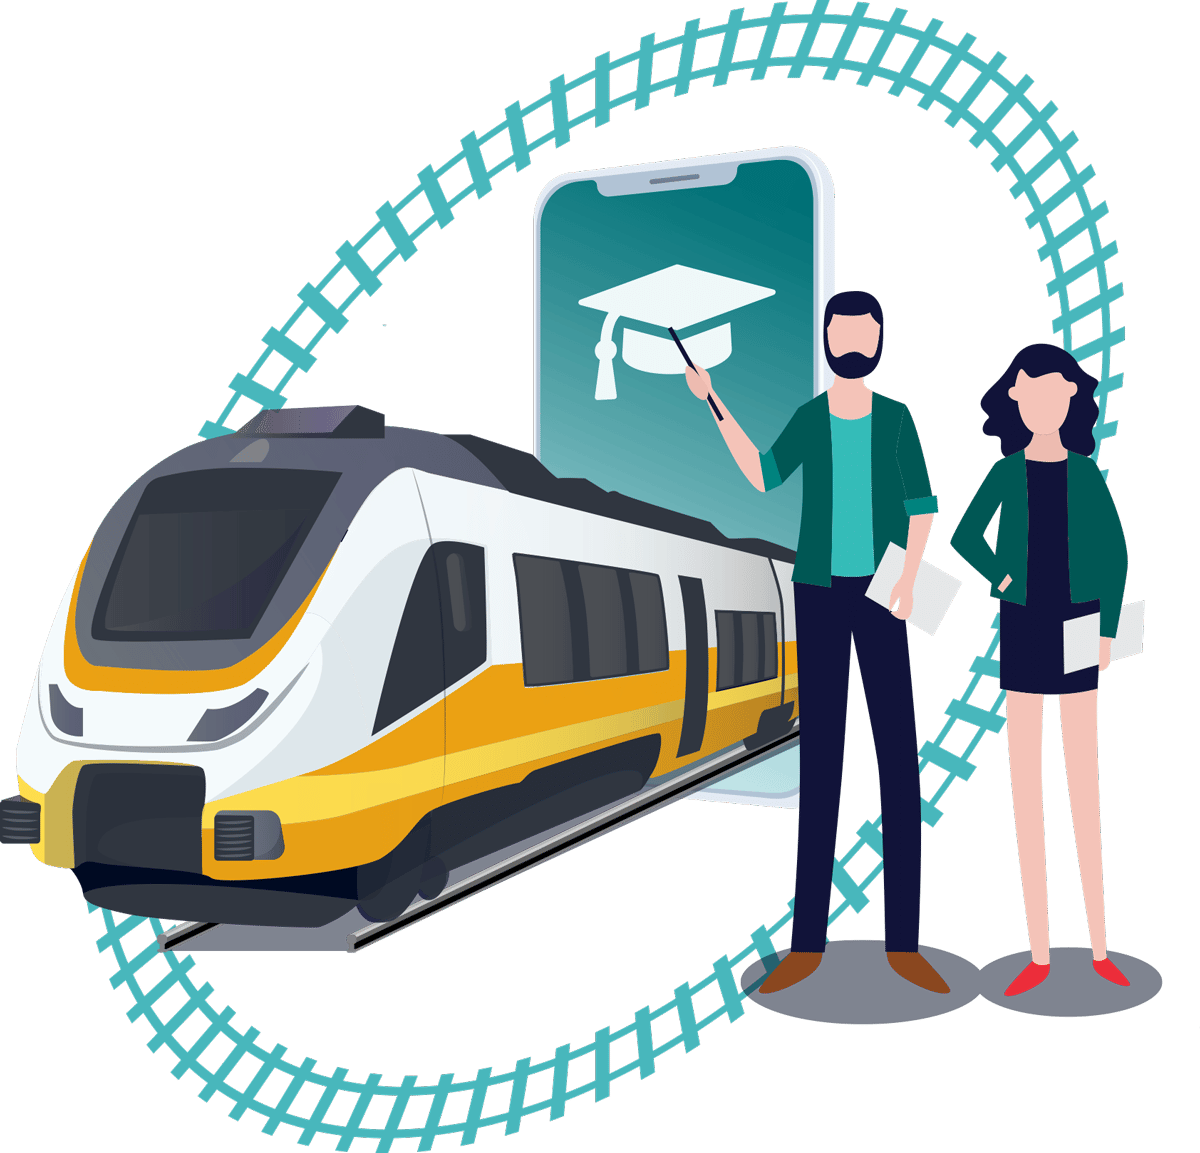 Das gemeinsame Portal für die Bahnbranche - E-Learning, Streckenkunde, Austauschplattform